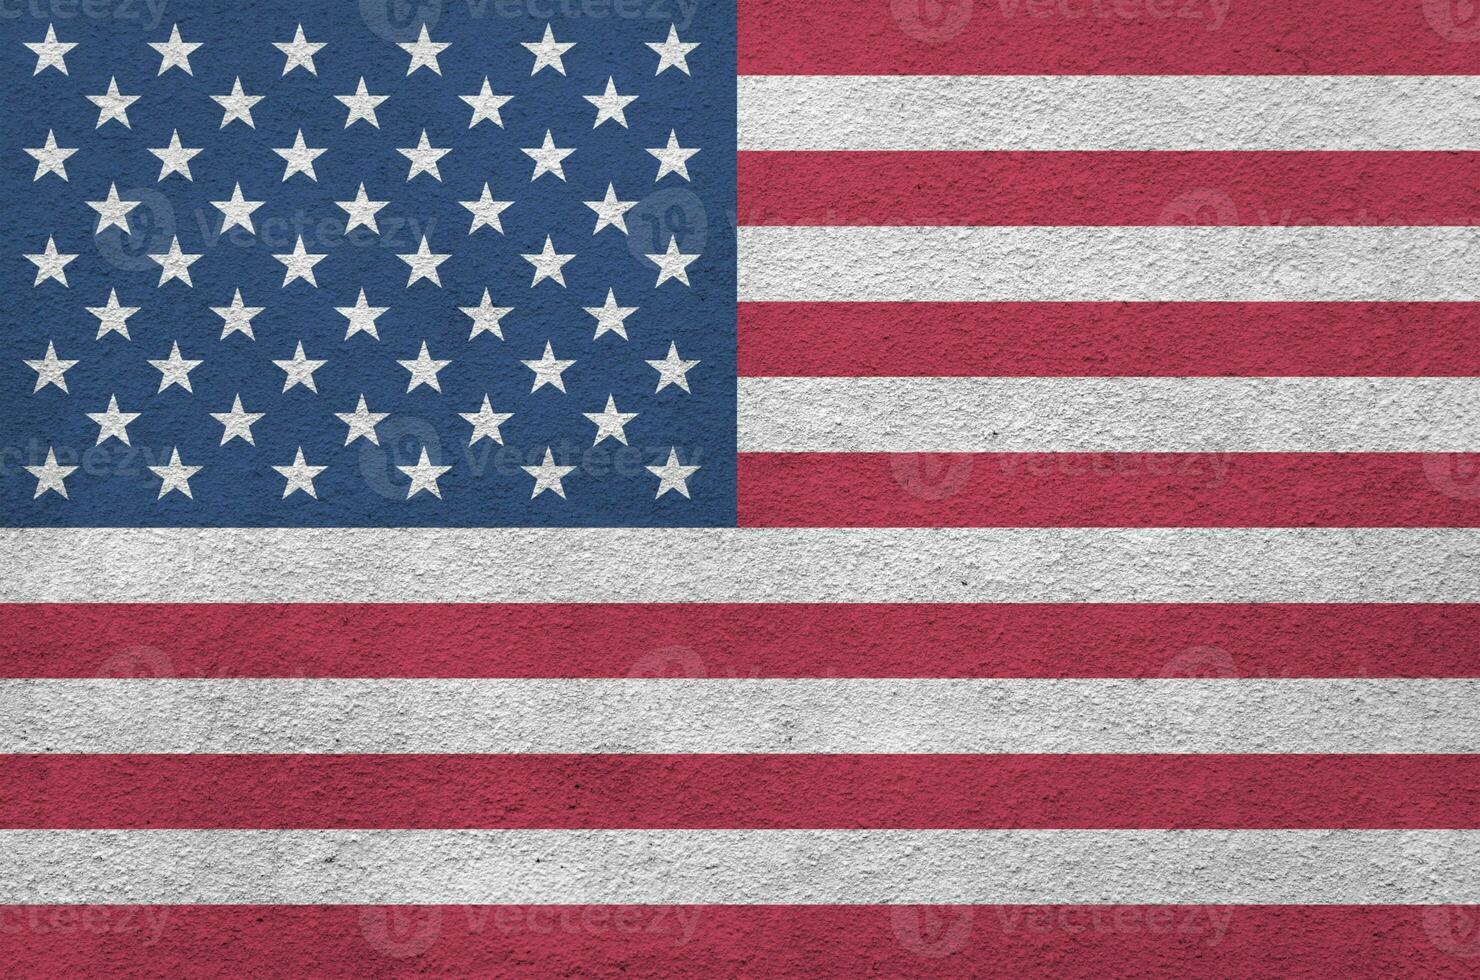 unido estados de America bandera representado en brillante pintar colores en antiguo alivio enlucido pared. texturizado bandera en áspero antecedentes foto